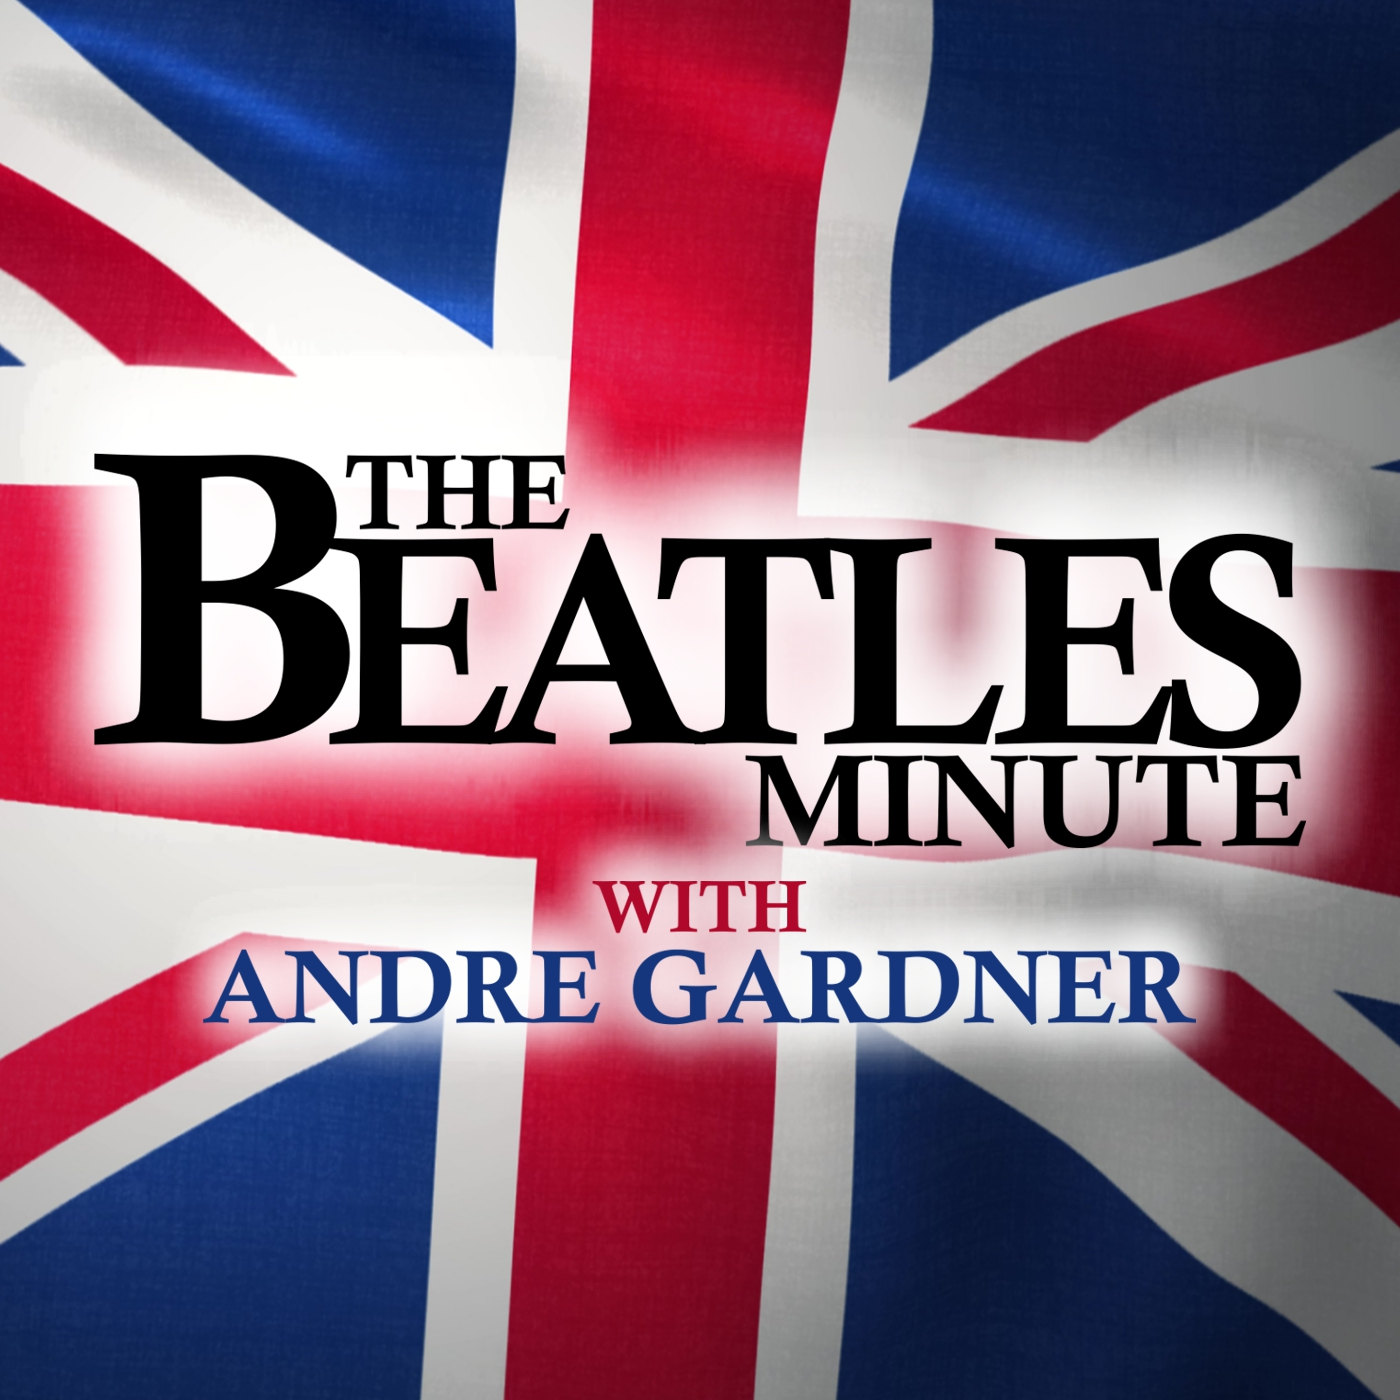 Beatles Minute - week of January 3, 2022